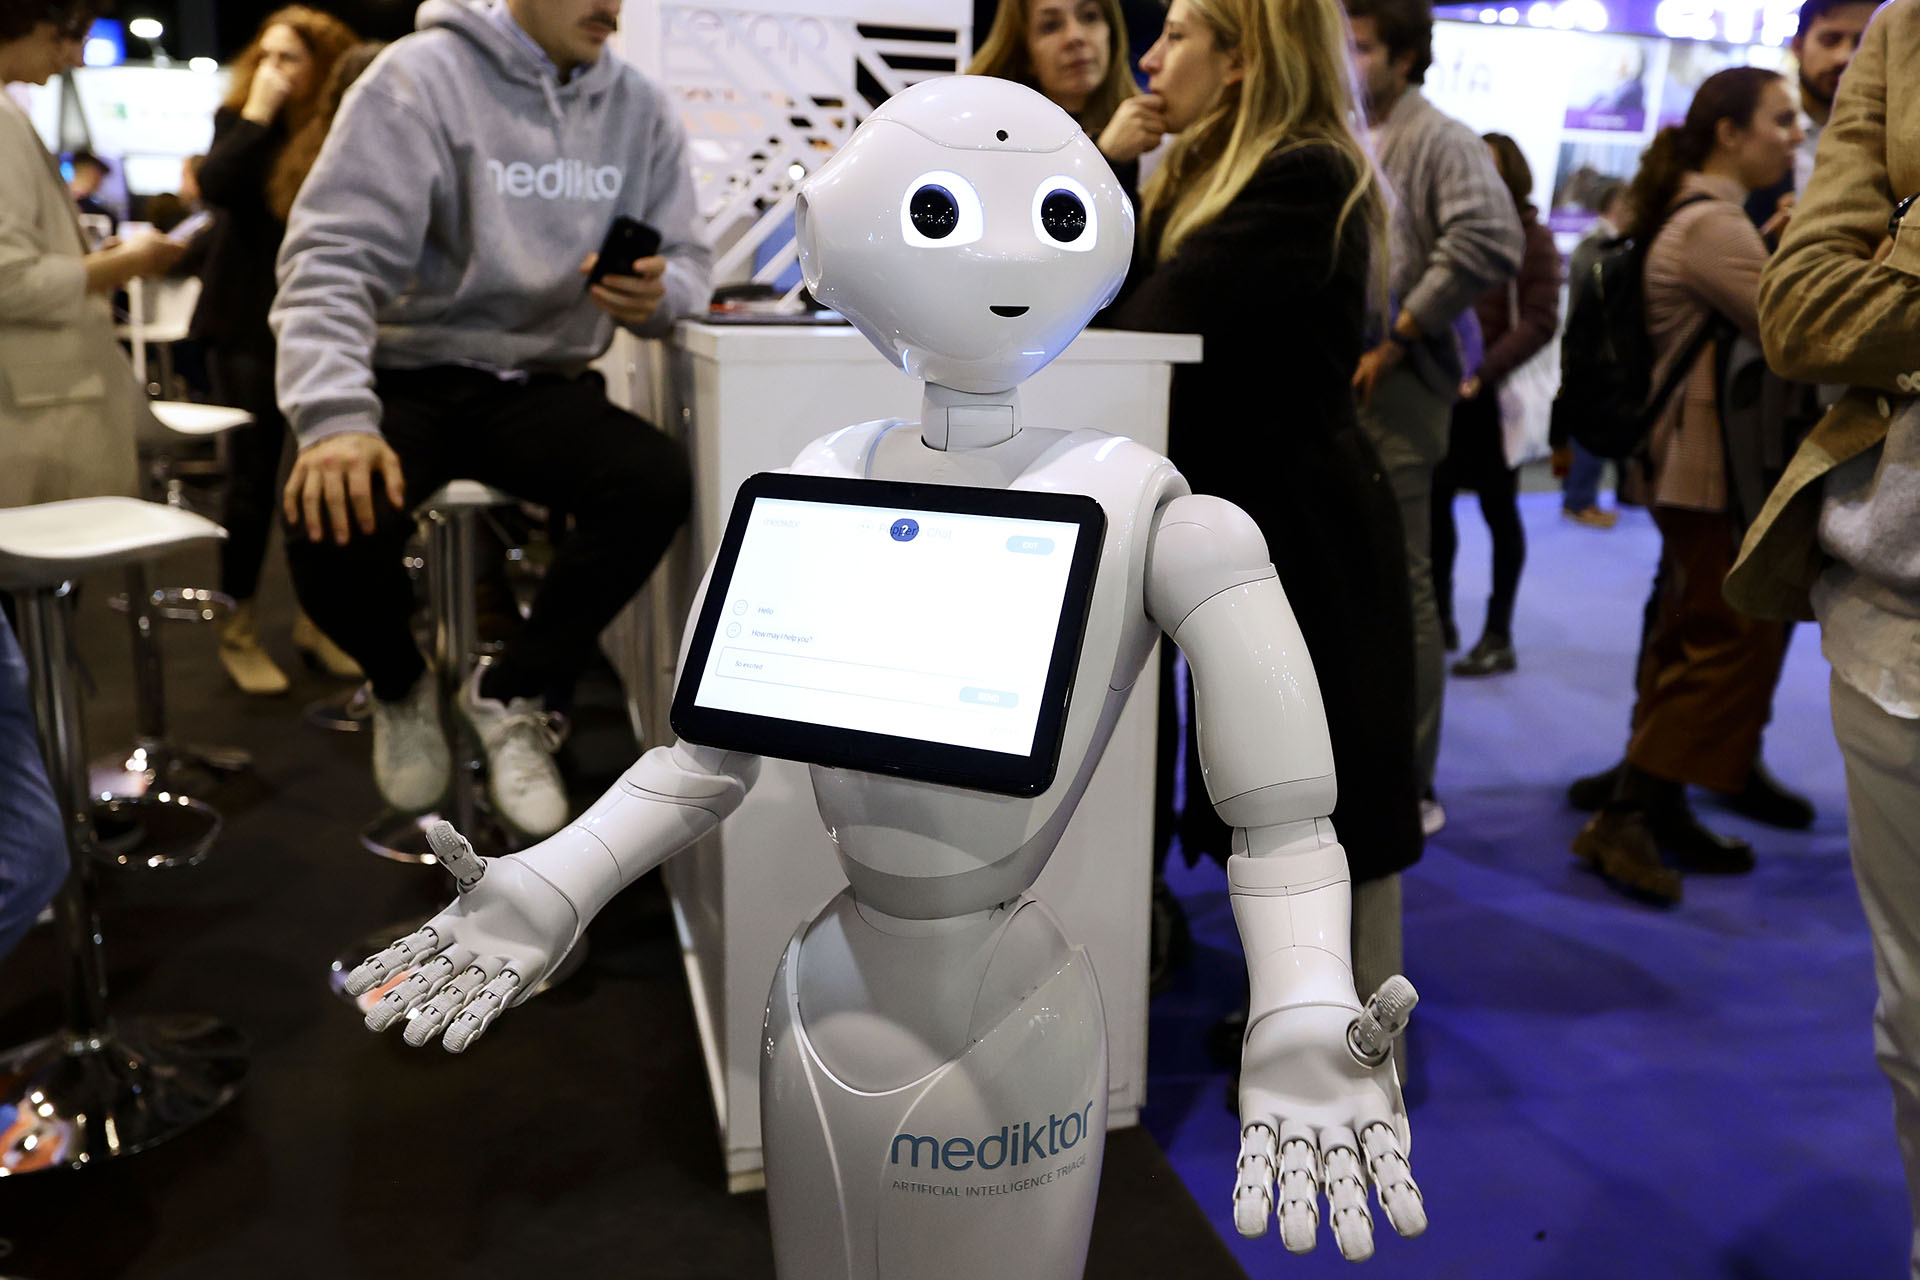 El mercado industrial de los robots viene creciendo de manera exponencial. Las ferias de robótica de todo el mundo presenta cada vez ejemplares más inteligentes y adaptados a la vida de los humanos Crédito: Getty